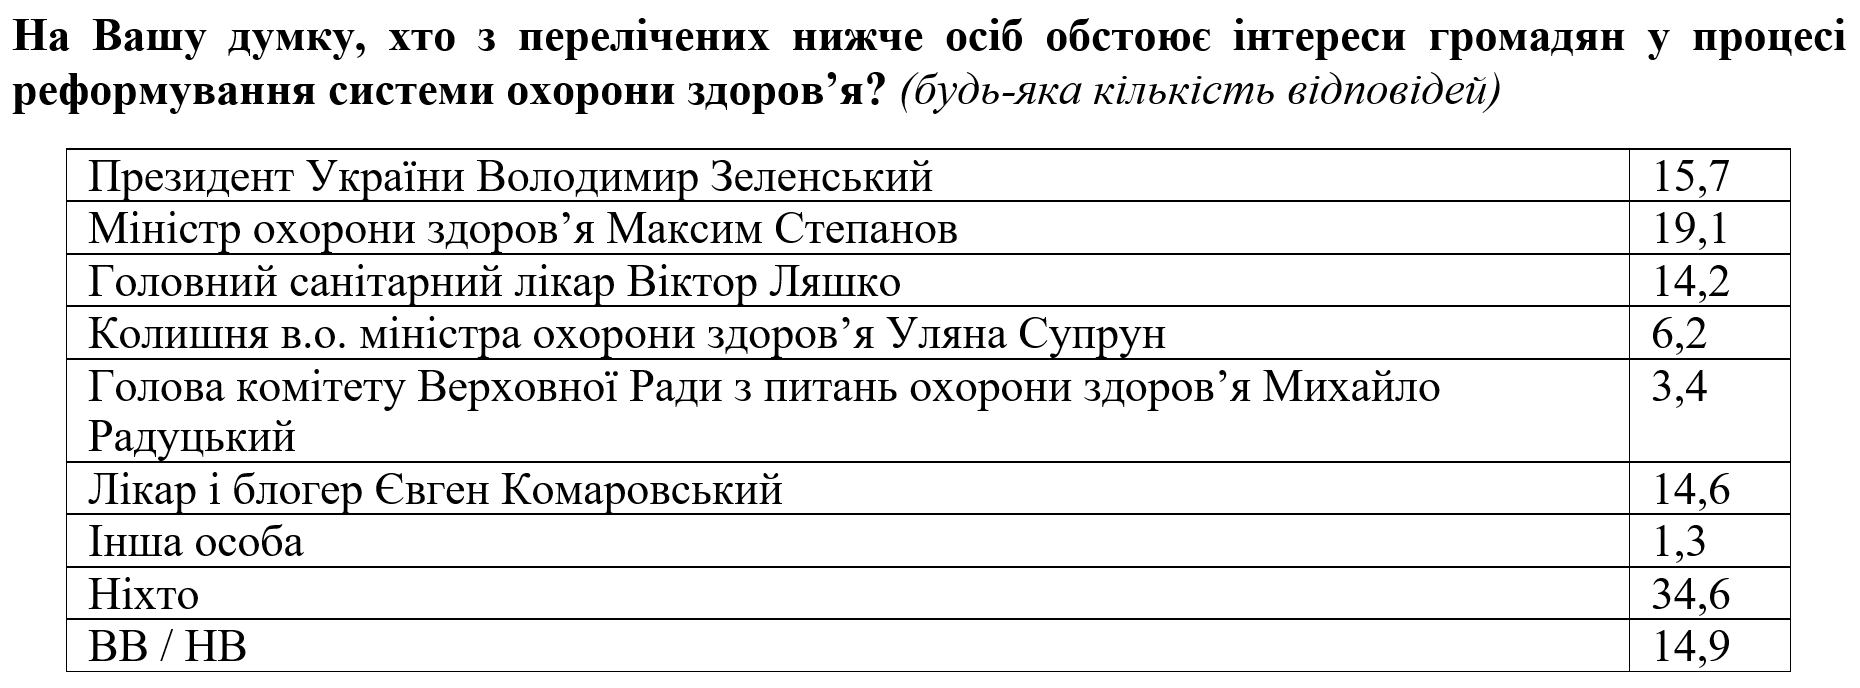 Украинцы считают, что об их здоровье Степанов заботится лучше чем Супрун - опрос. Скриншот